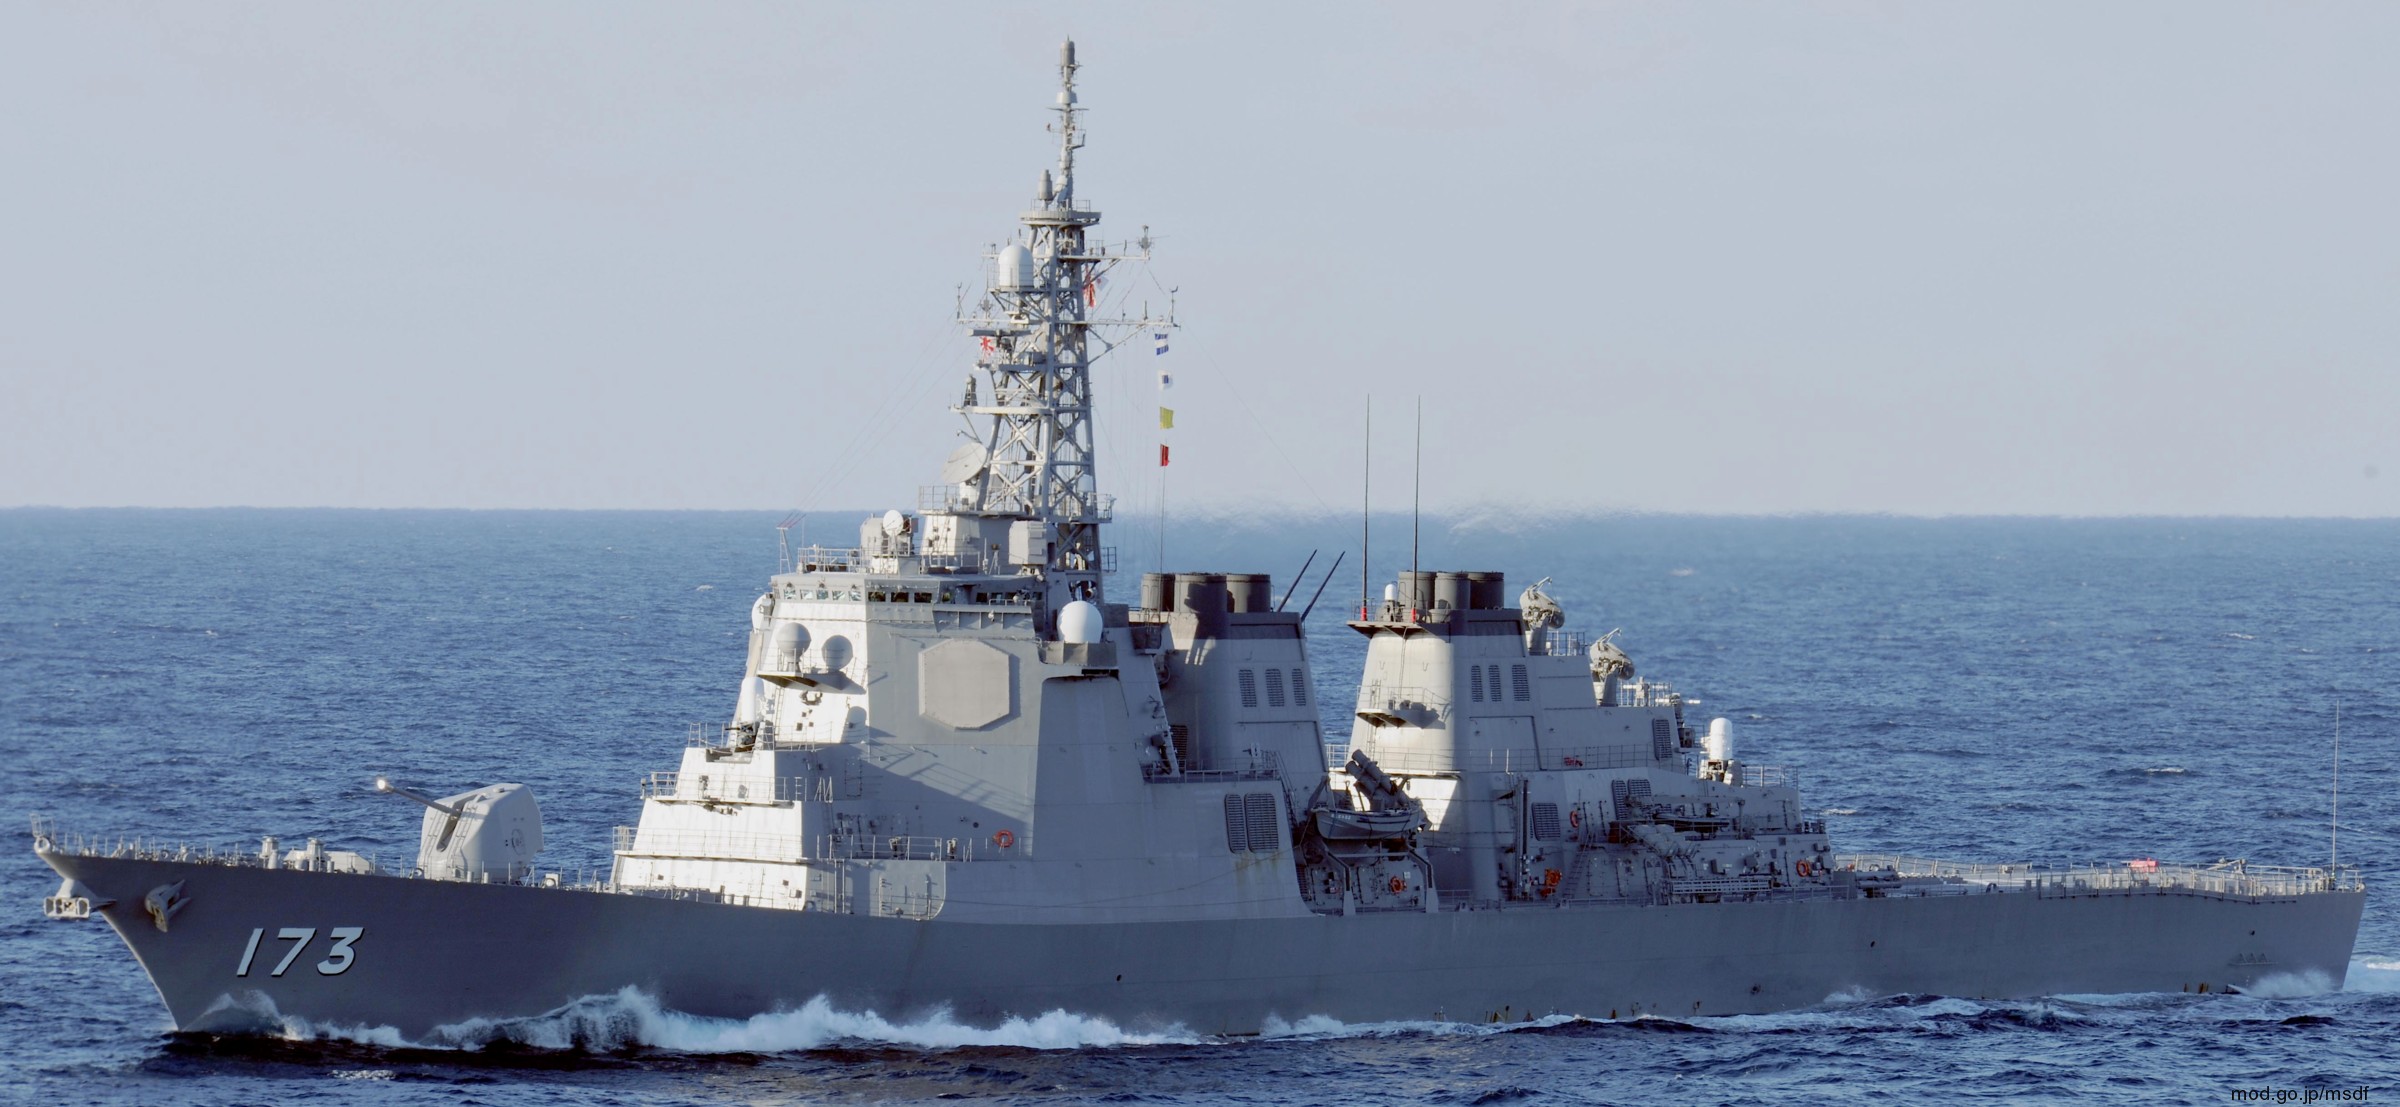 ddg-173 jds kongou guided missile destroyer japan maritime self defense force jmsdf 03